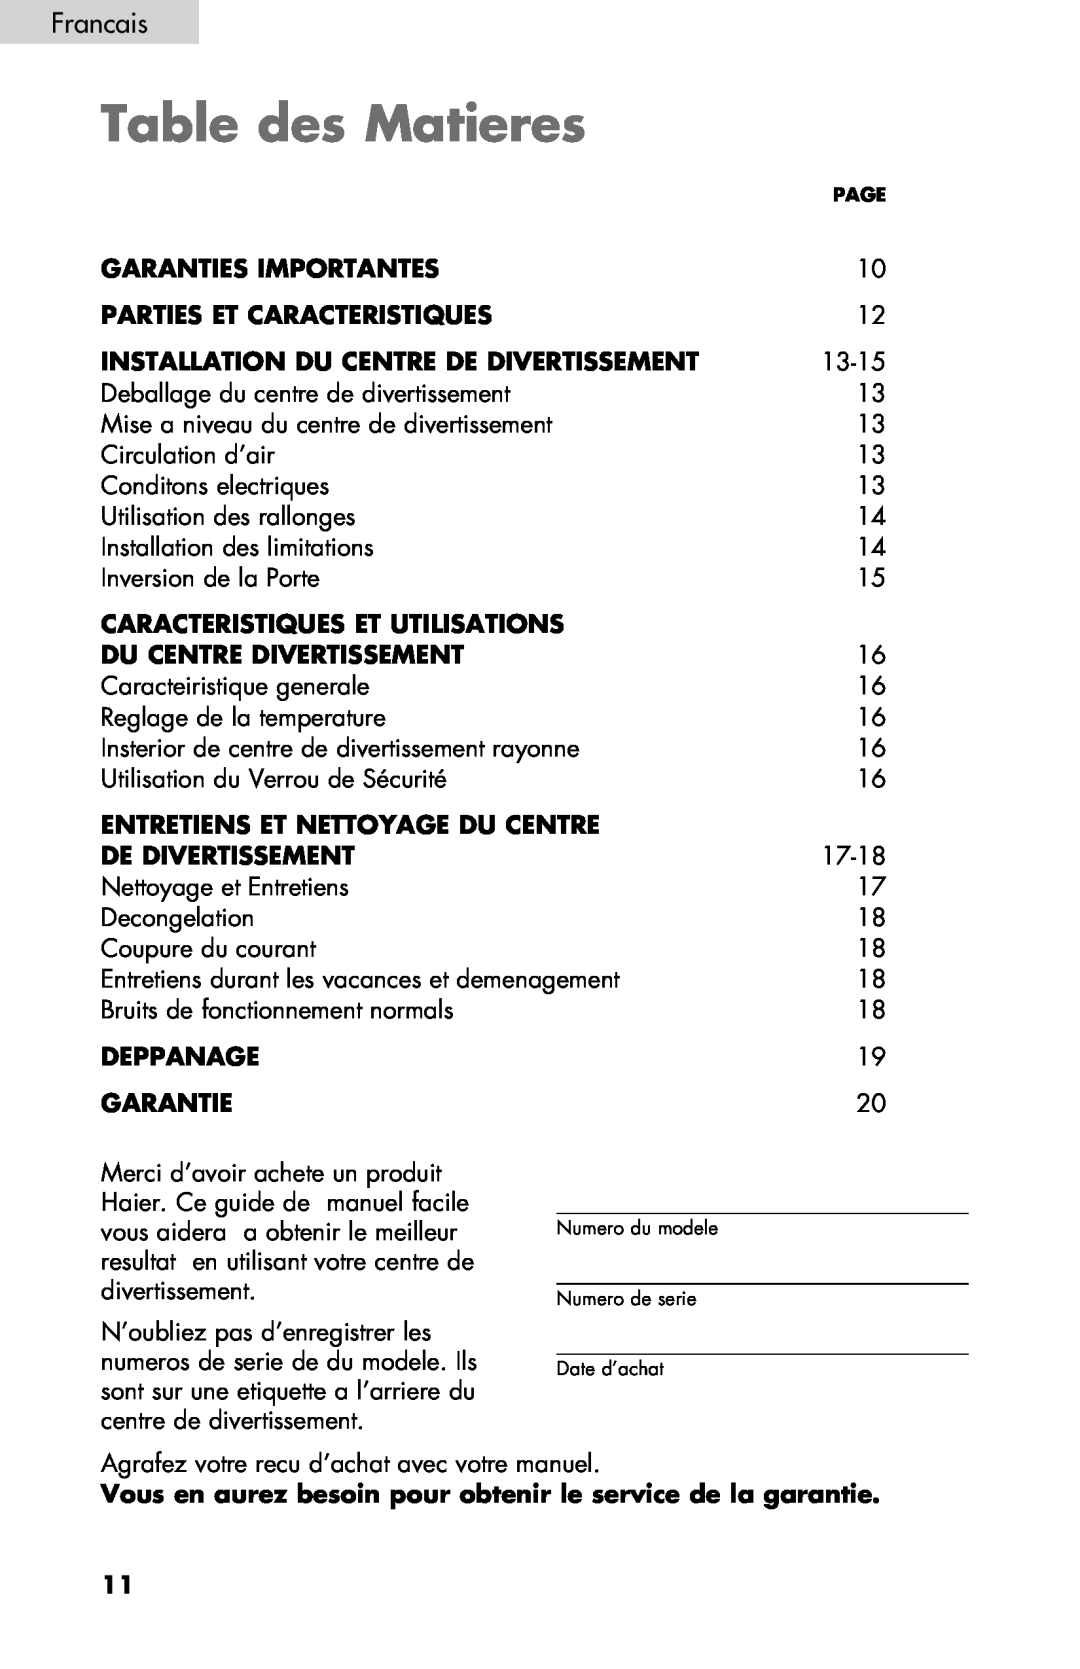 Haier ZHBCN05FVS Table des Matieres, Garanties Importantes, Parties Et Caracteristiques, Caracteristiques Et Utilisations 